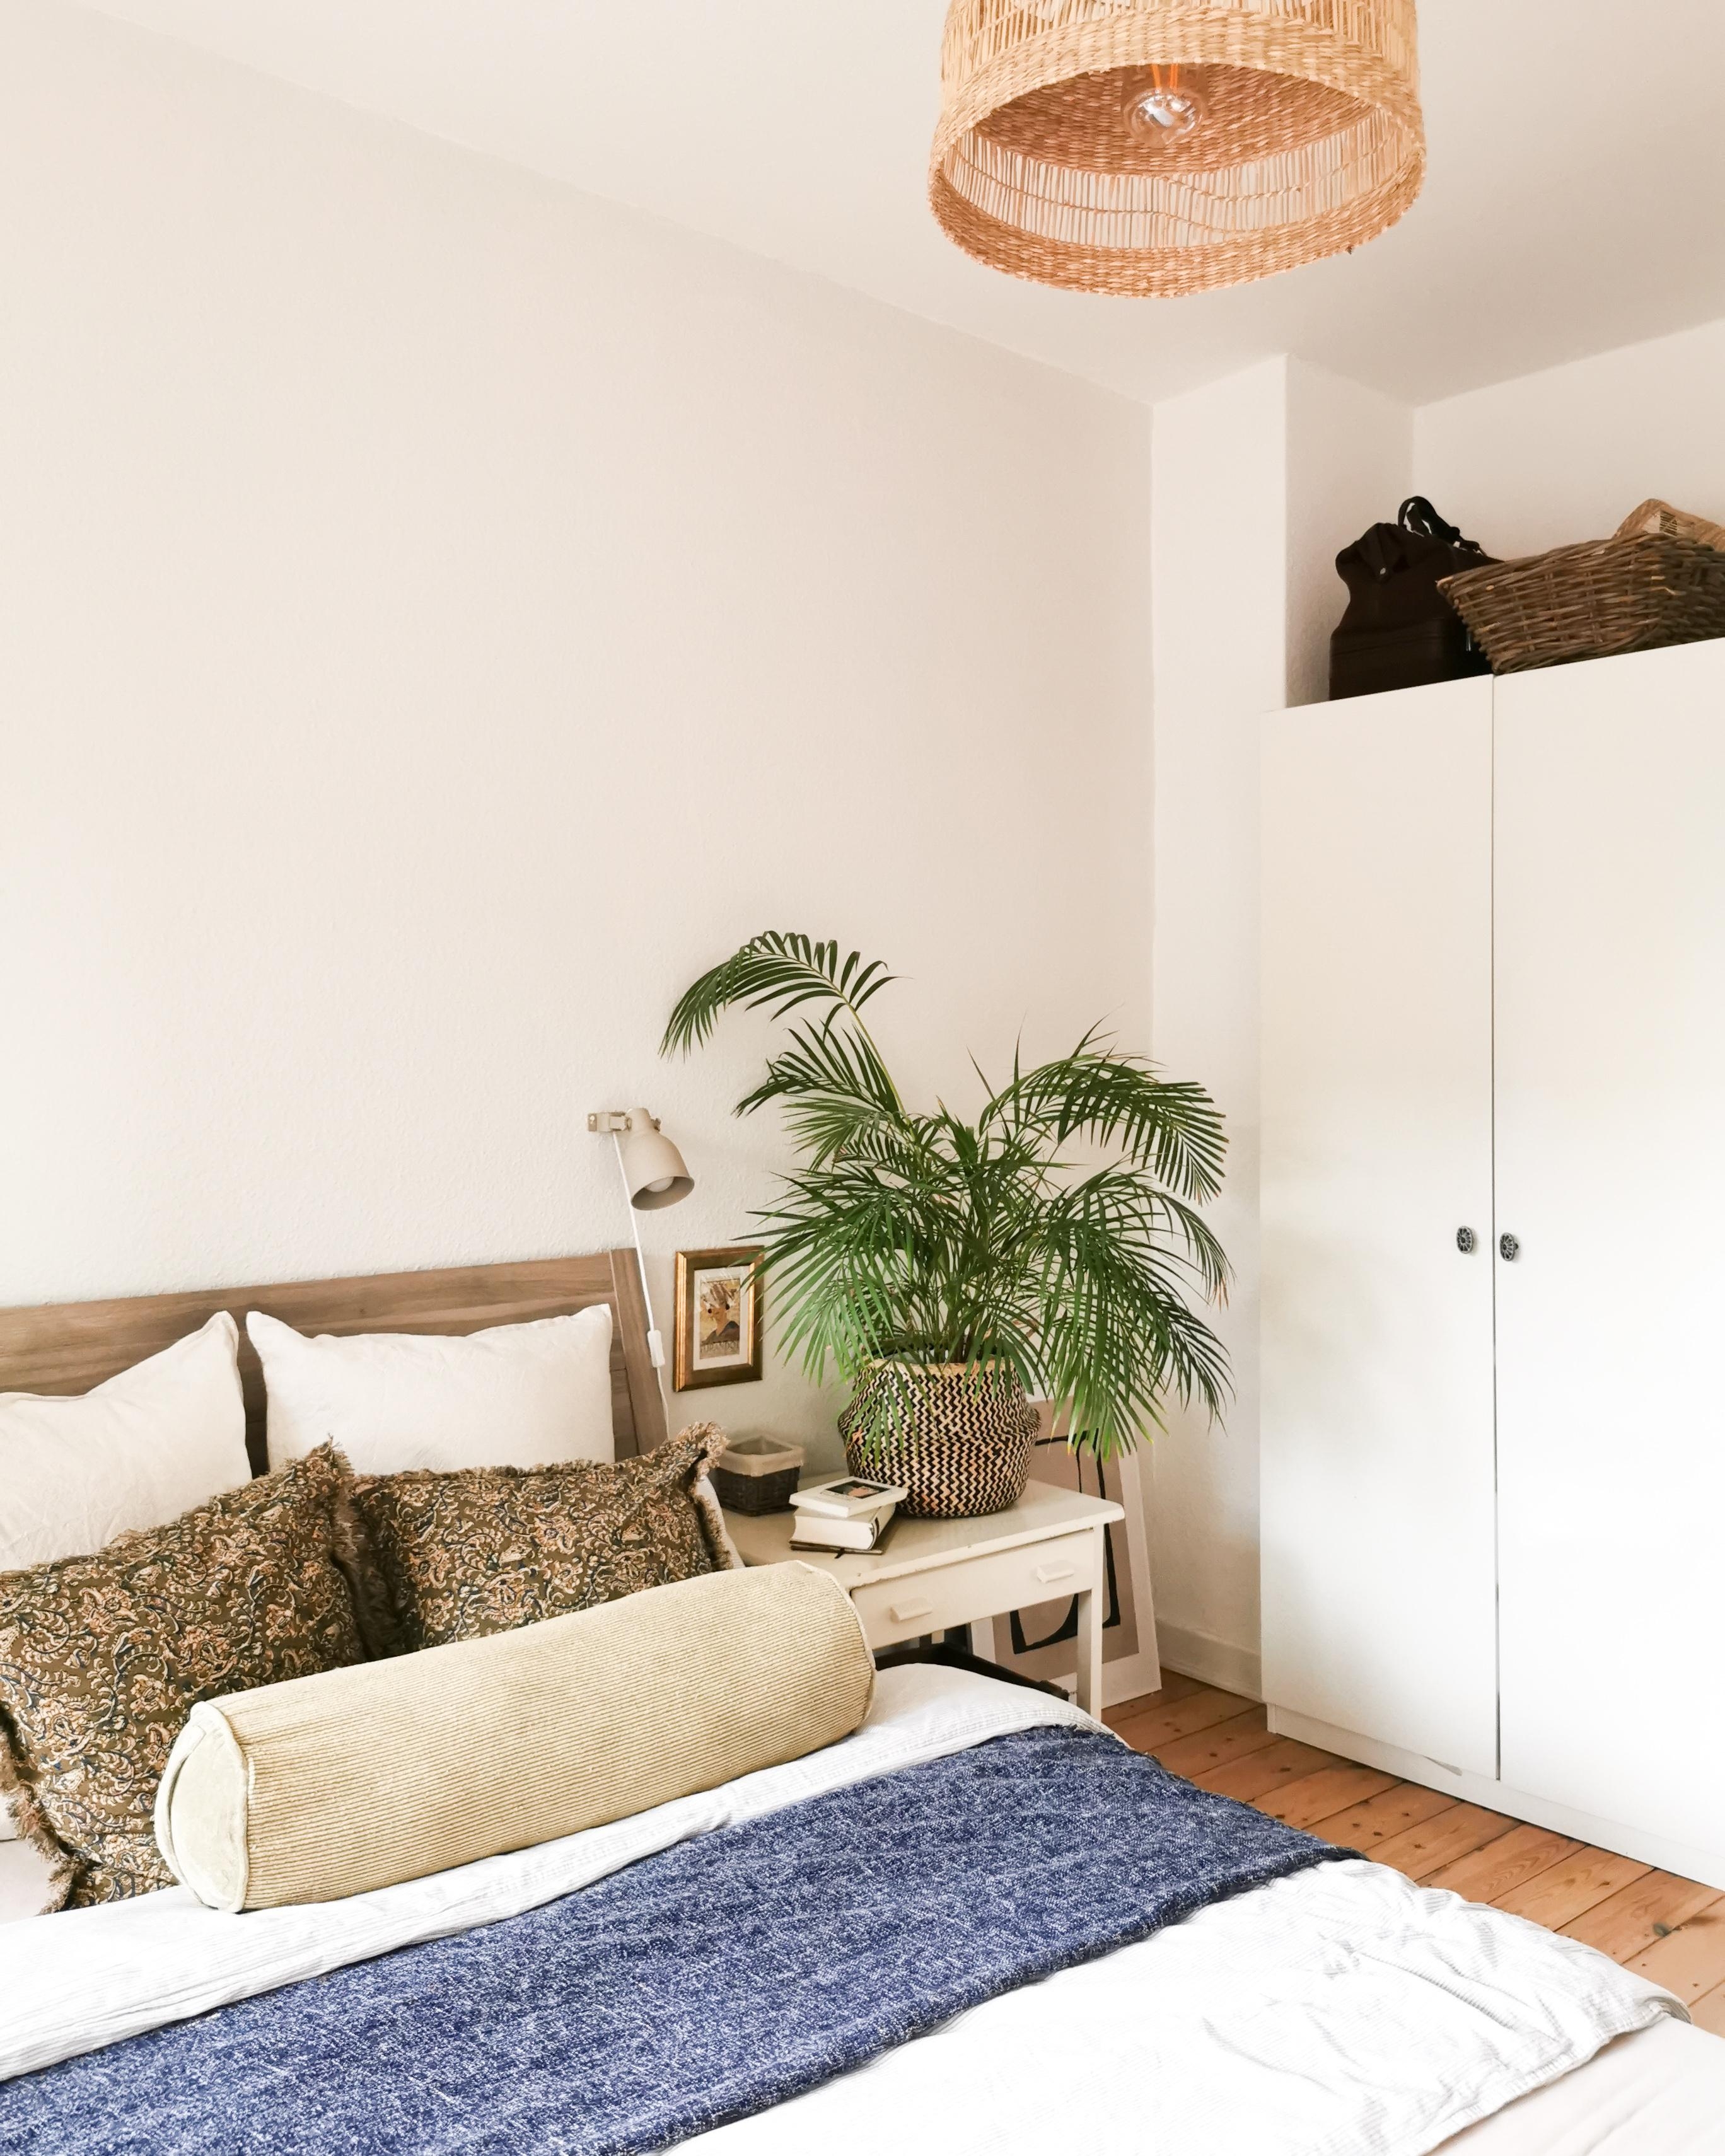 Sandfarbene Dielen, meeresblaue Decke, tiefgrüne Palme und nochmal im Bett umdrehen - Urlaub! #schlafzimmer #couchstyle